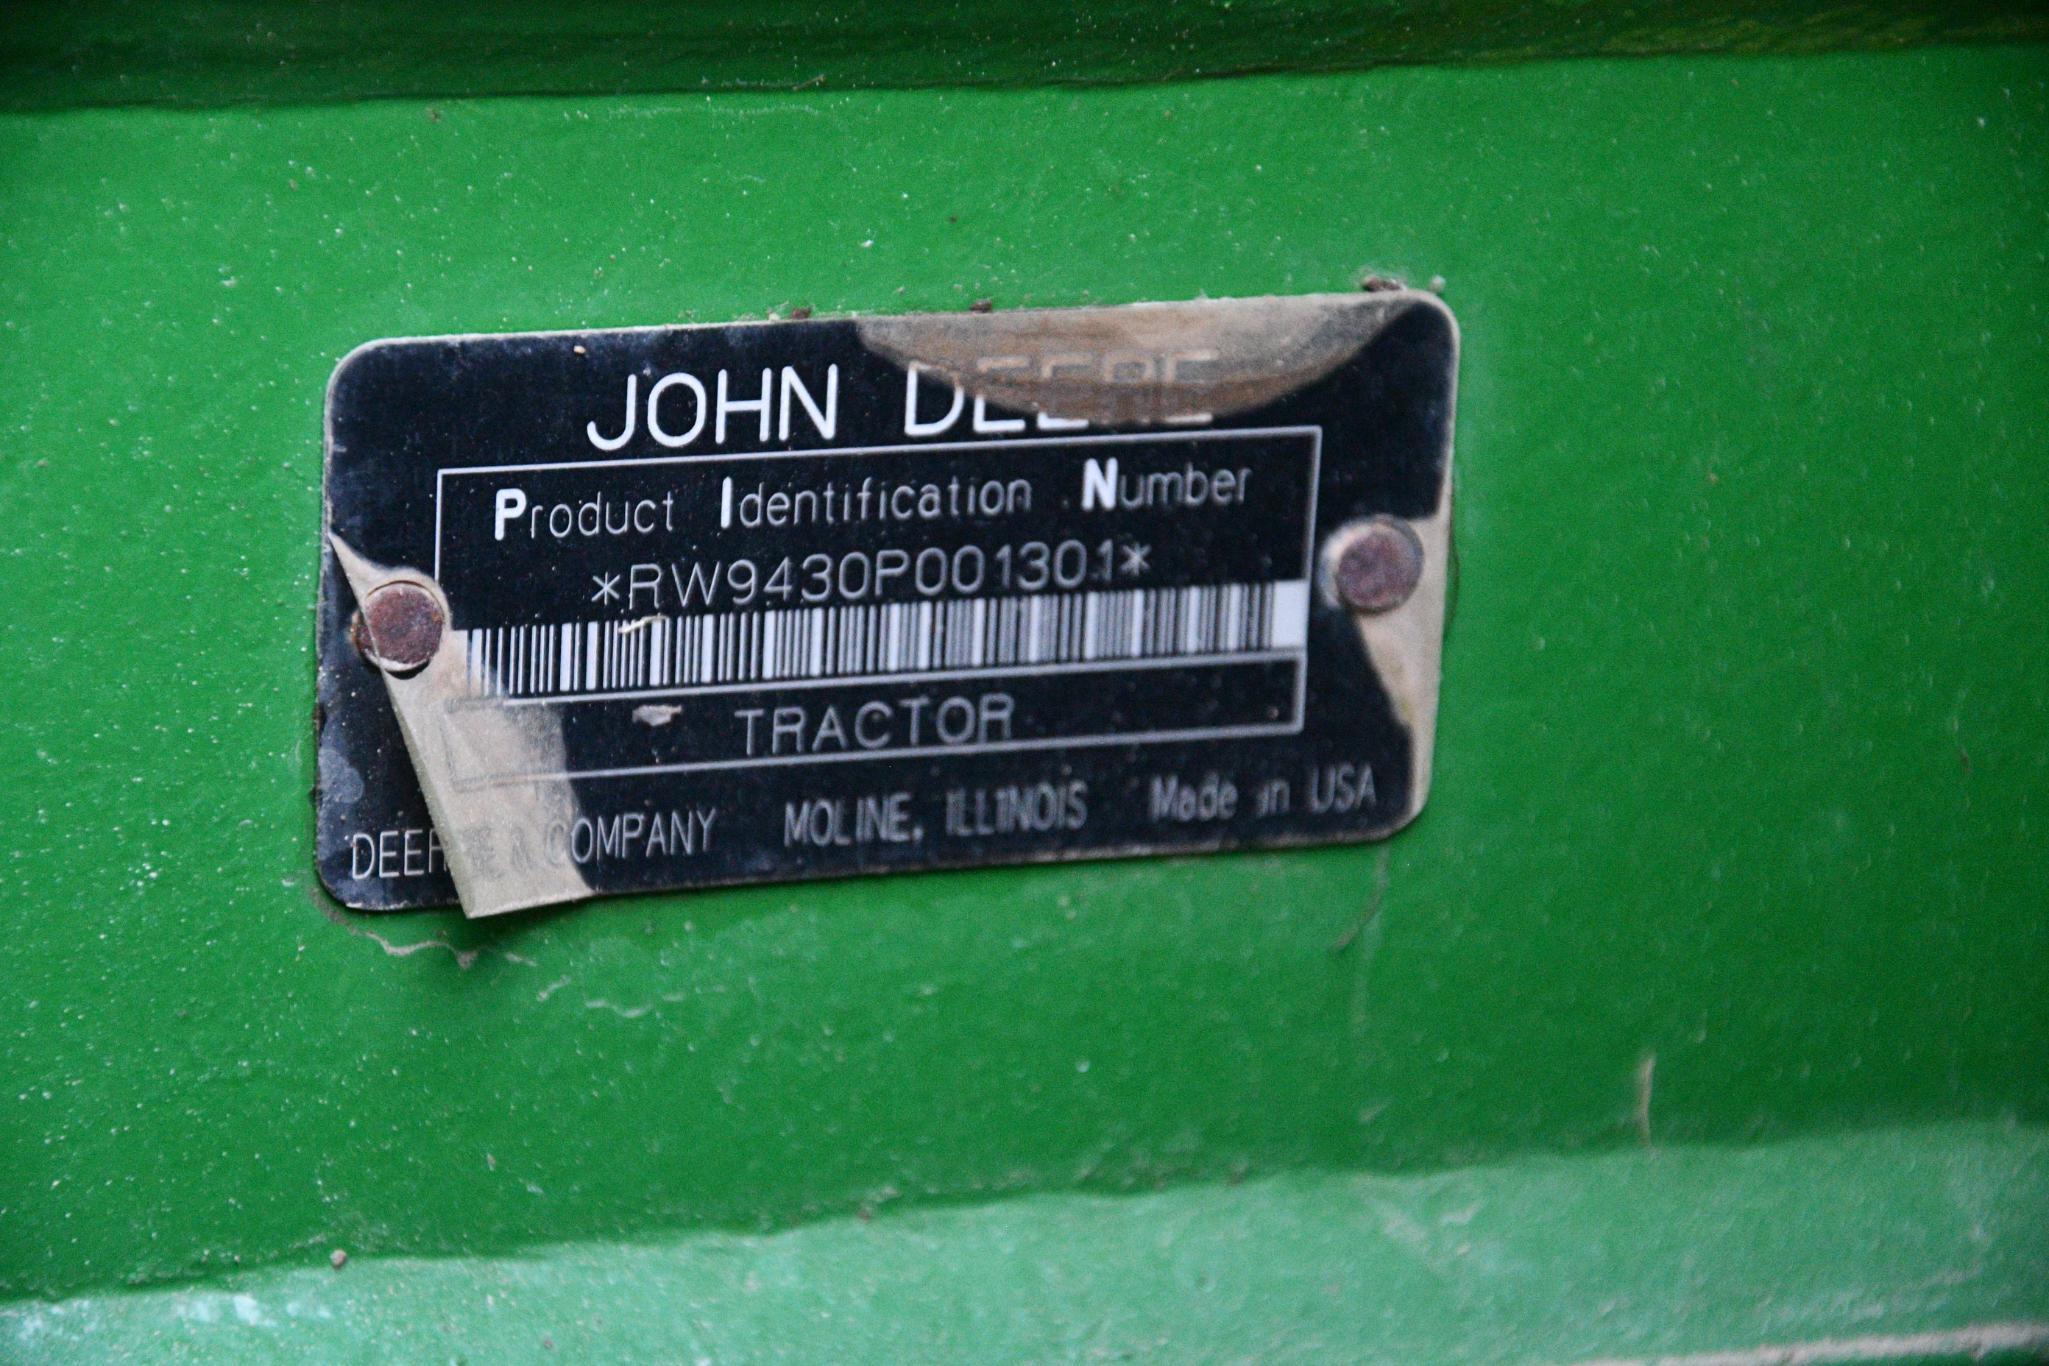 2007 John Deere 9430 4wd tractor